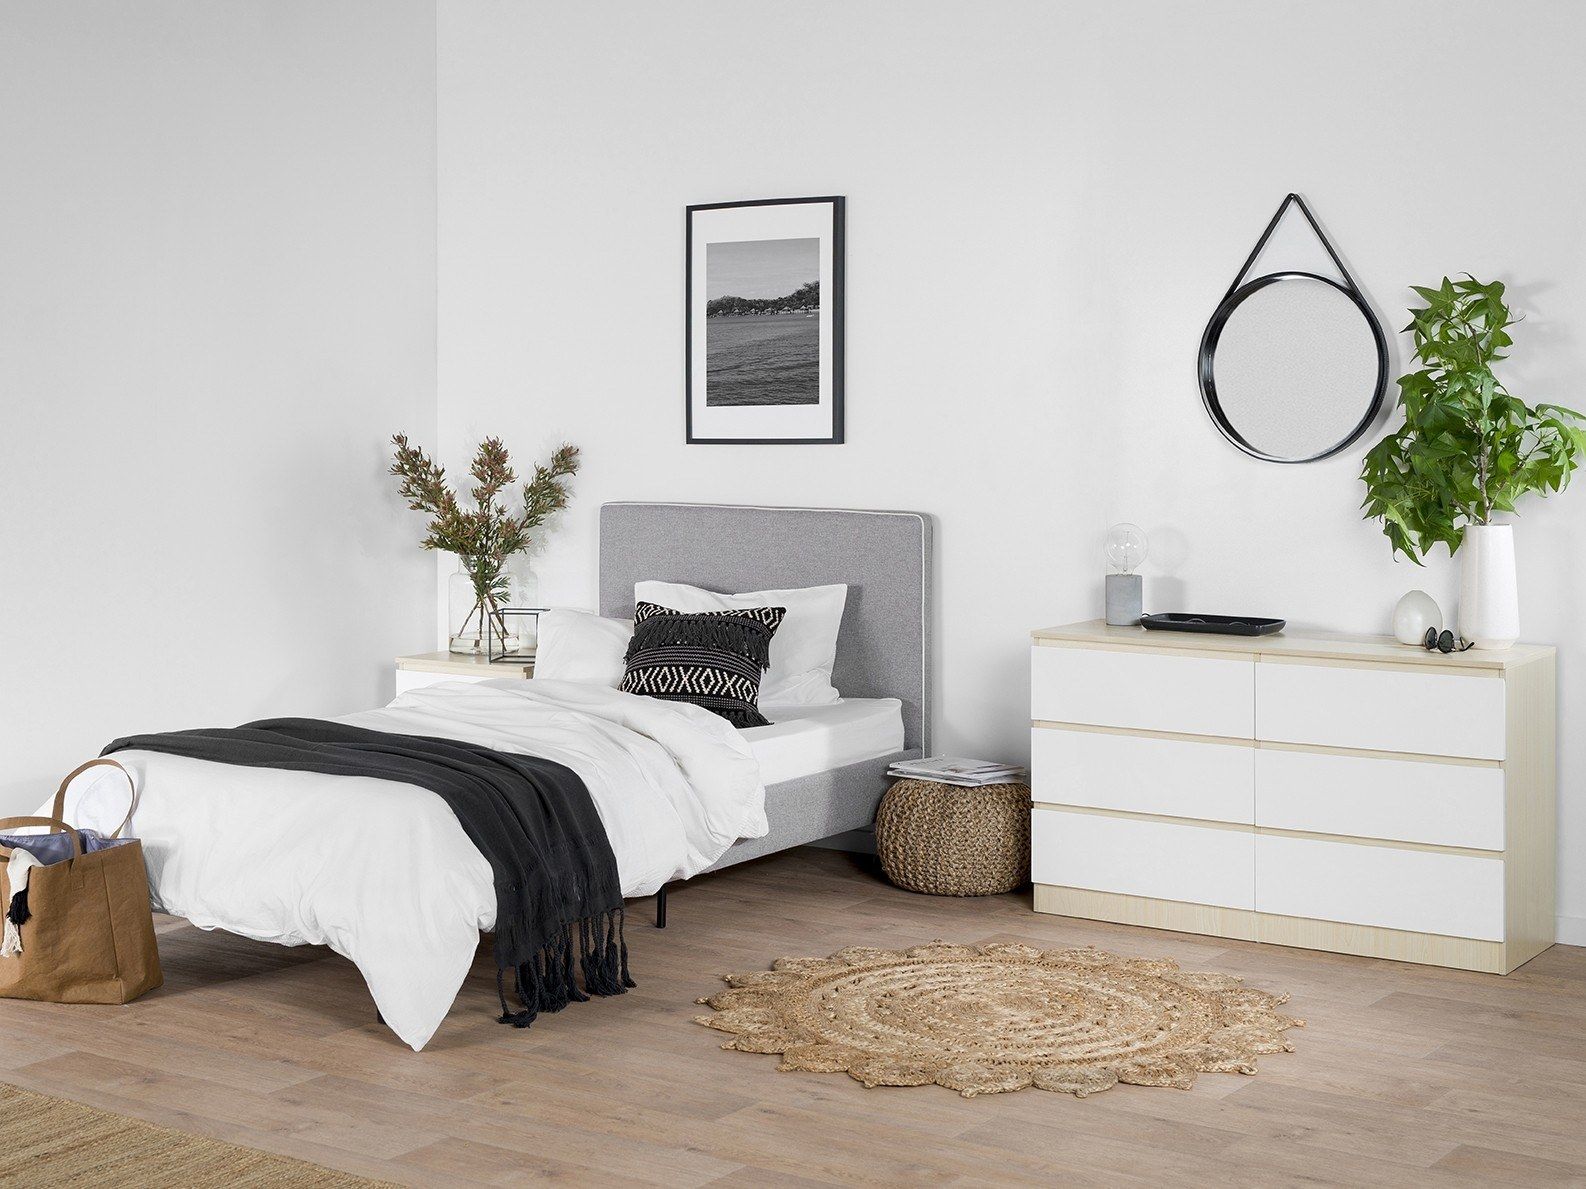 Phong cách minimalism cho phòng ngủ 7m2 màu trắng nền nã